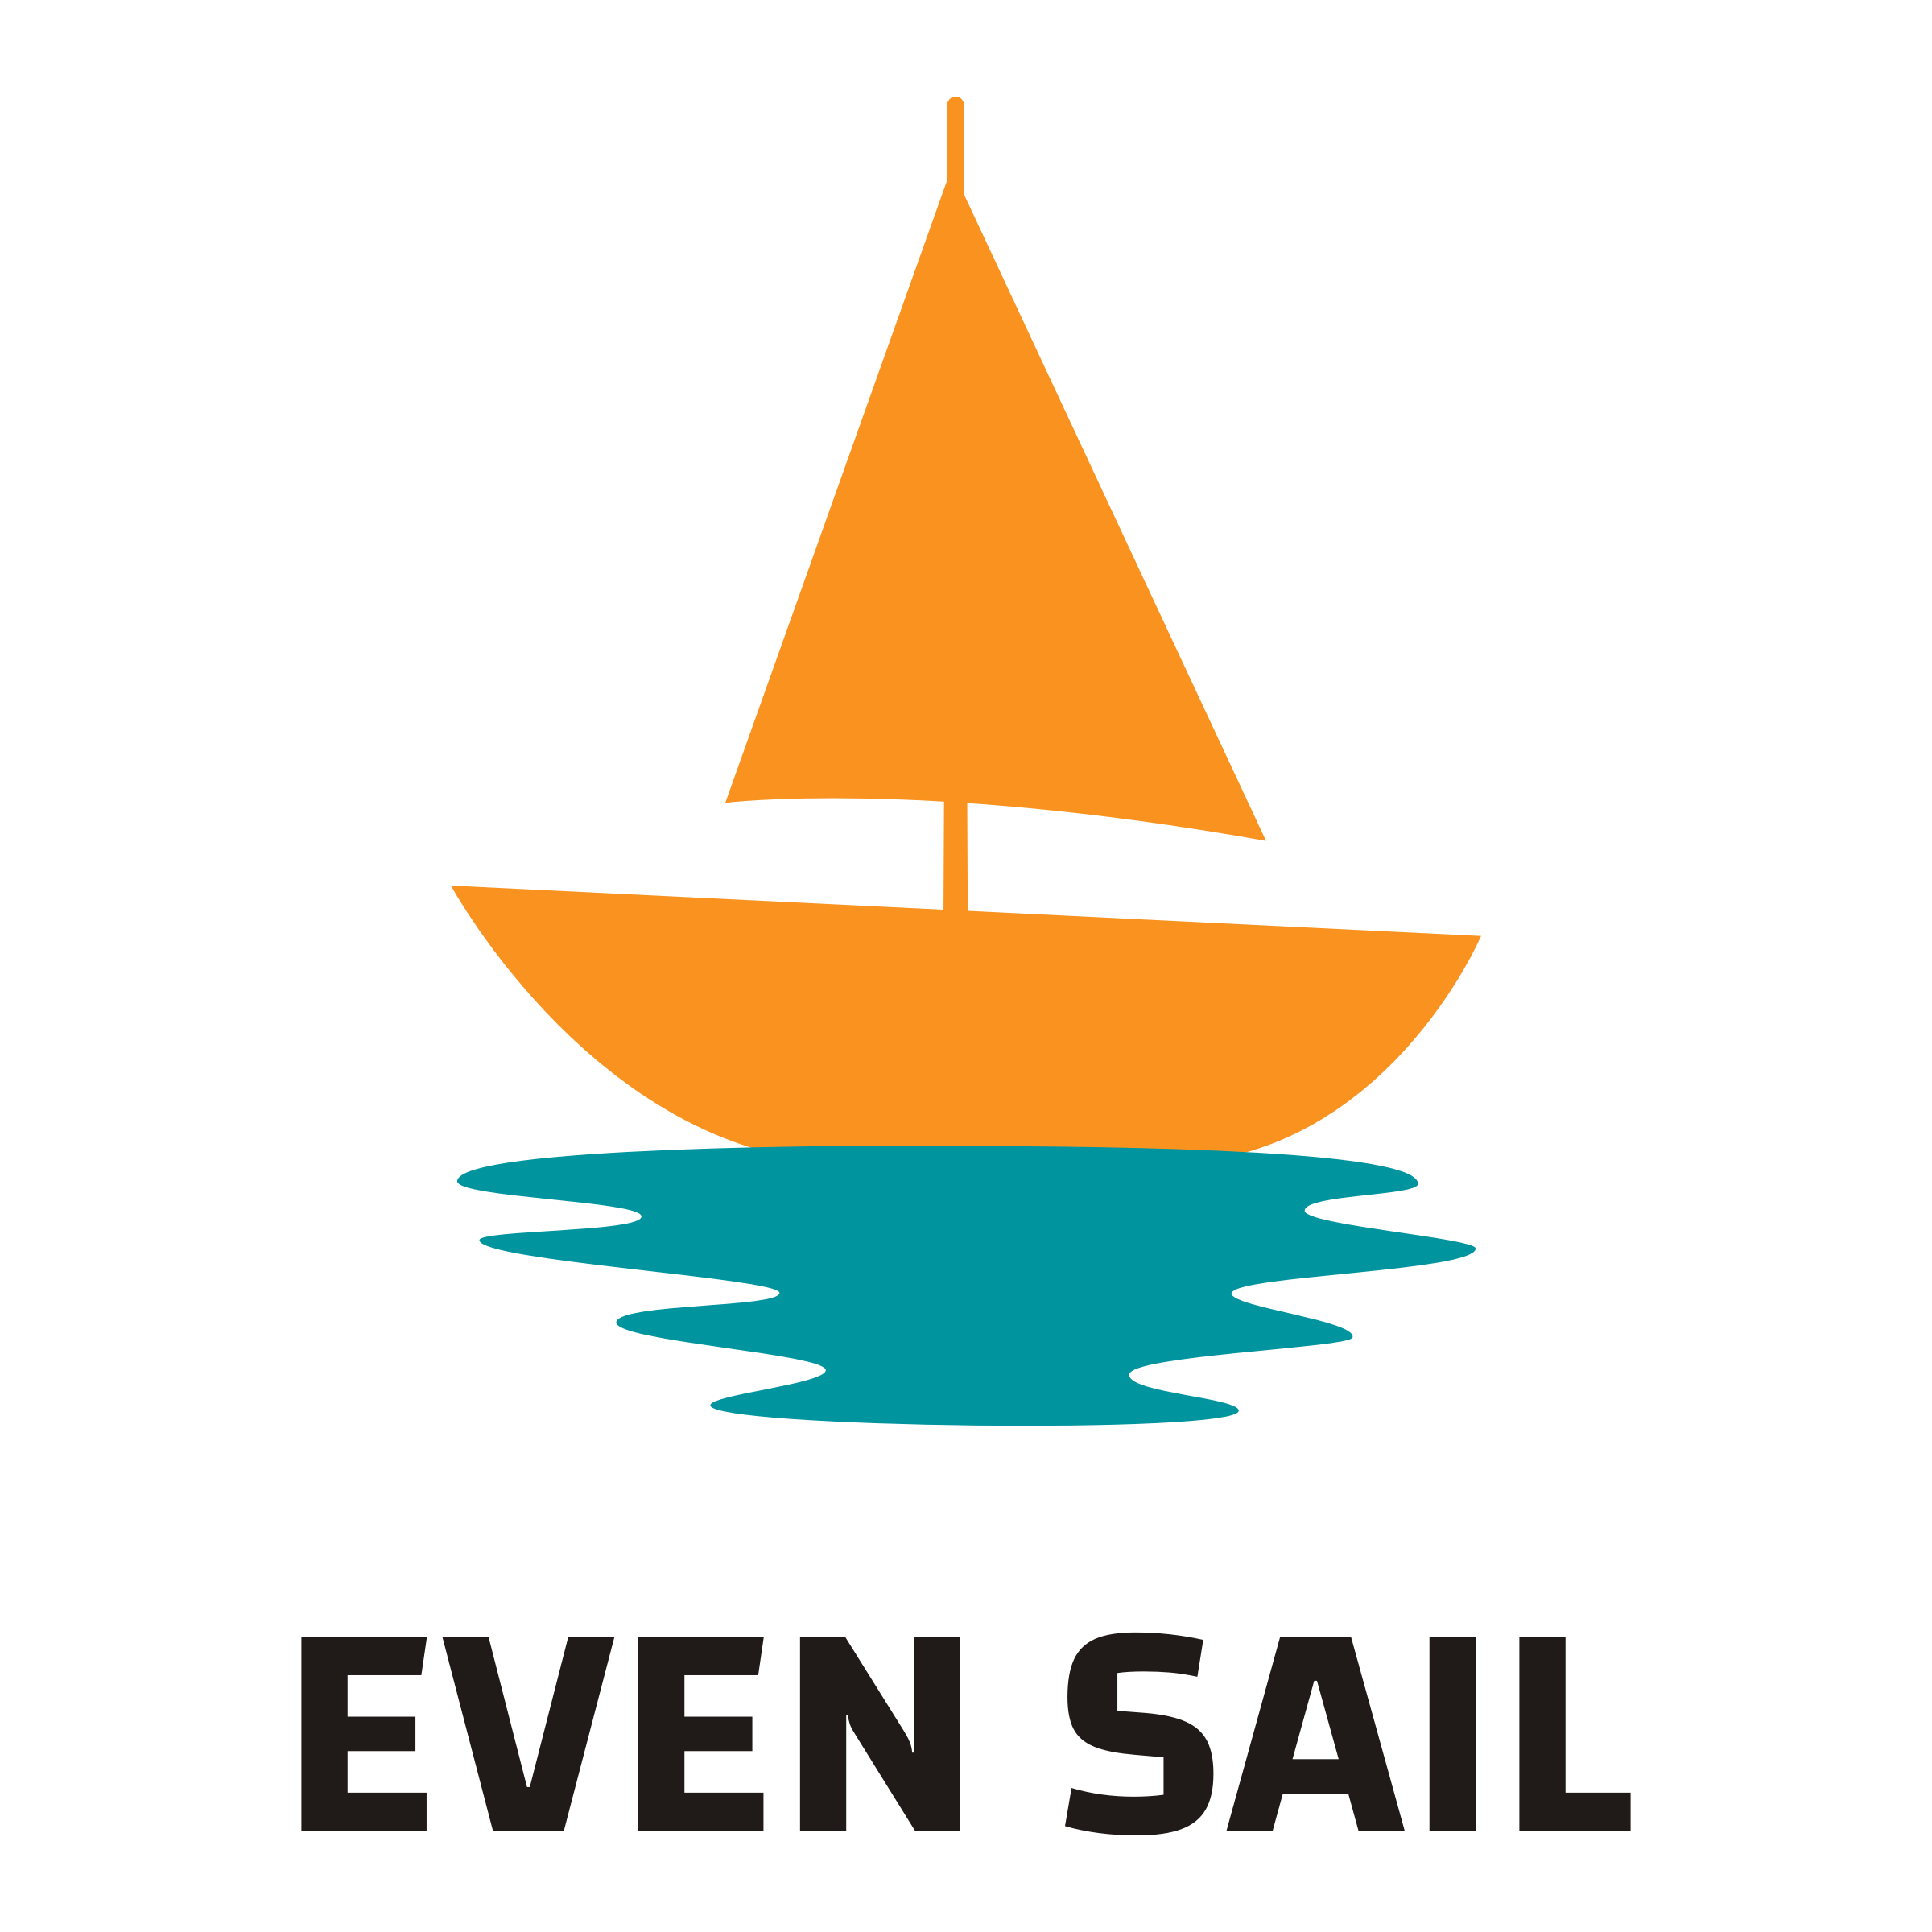 sailboat logo